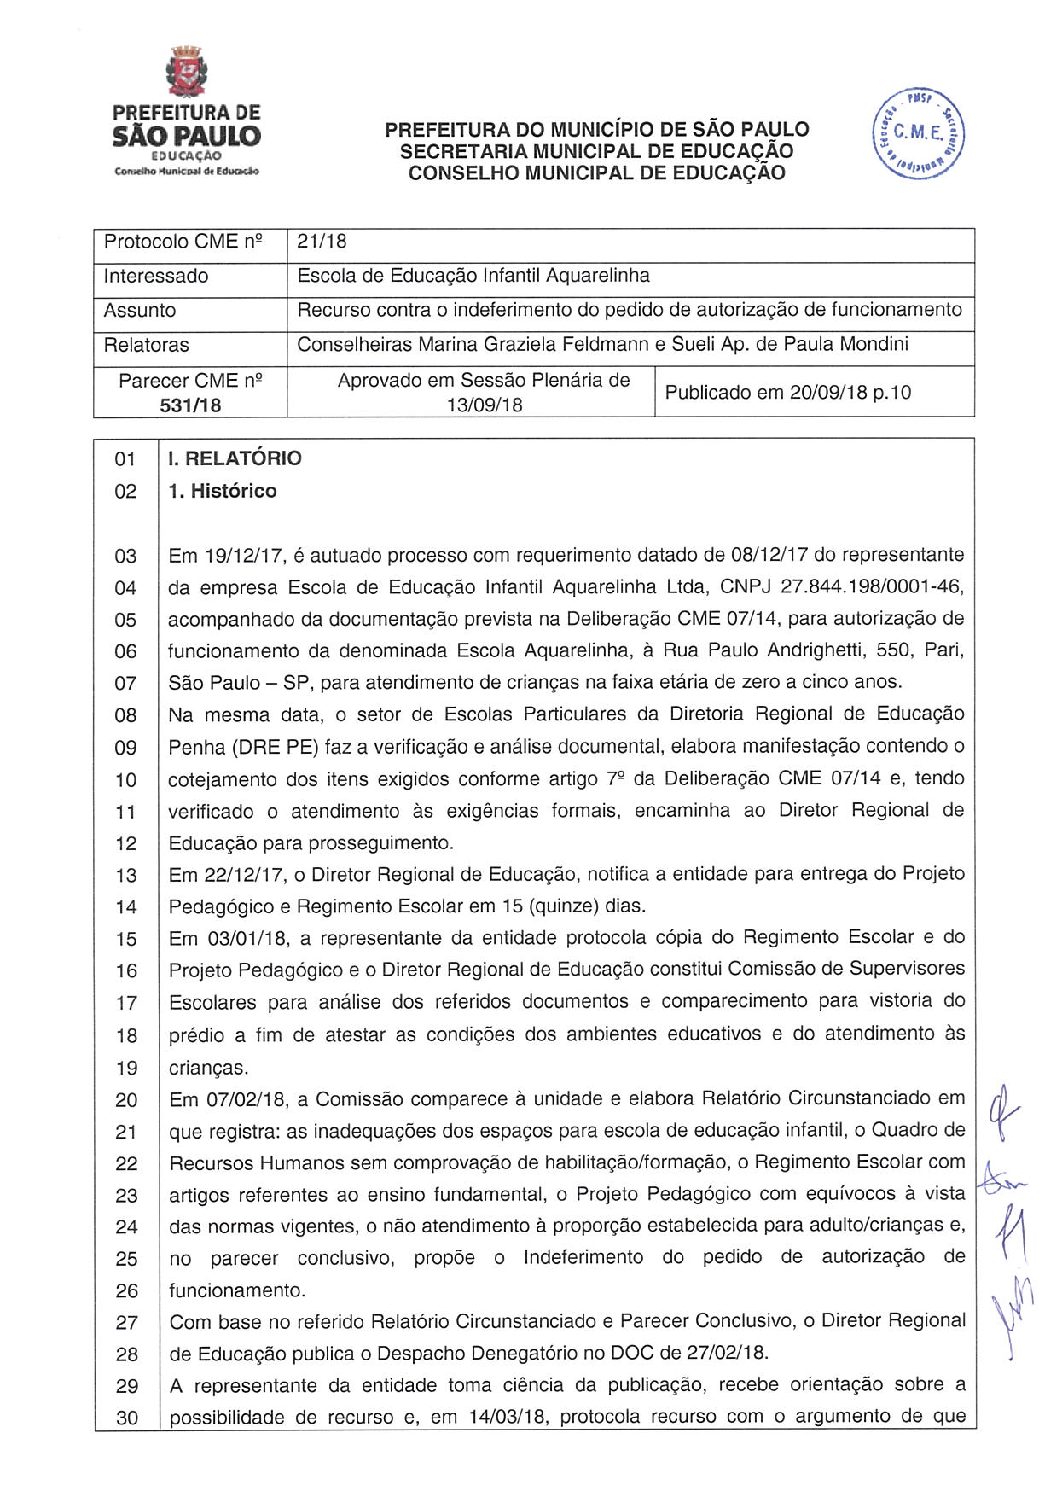 Parecer CME nº 531/2018 - Escola de Educação Infantil Aquarelinha (DRE Penha) - Recurso contra o indeferimento do pedido de autorização de funcionamento